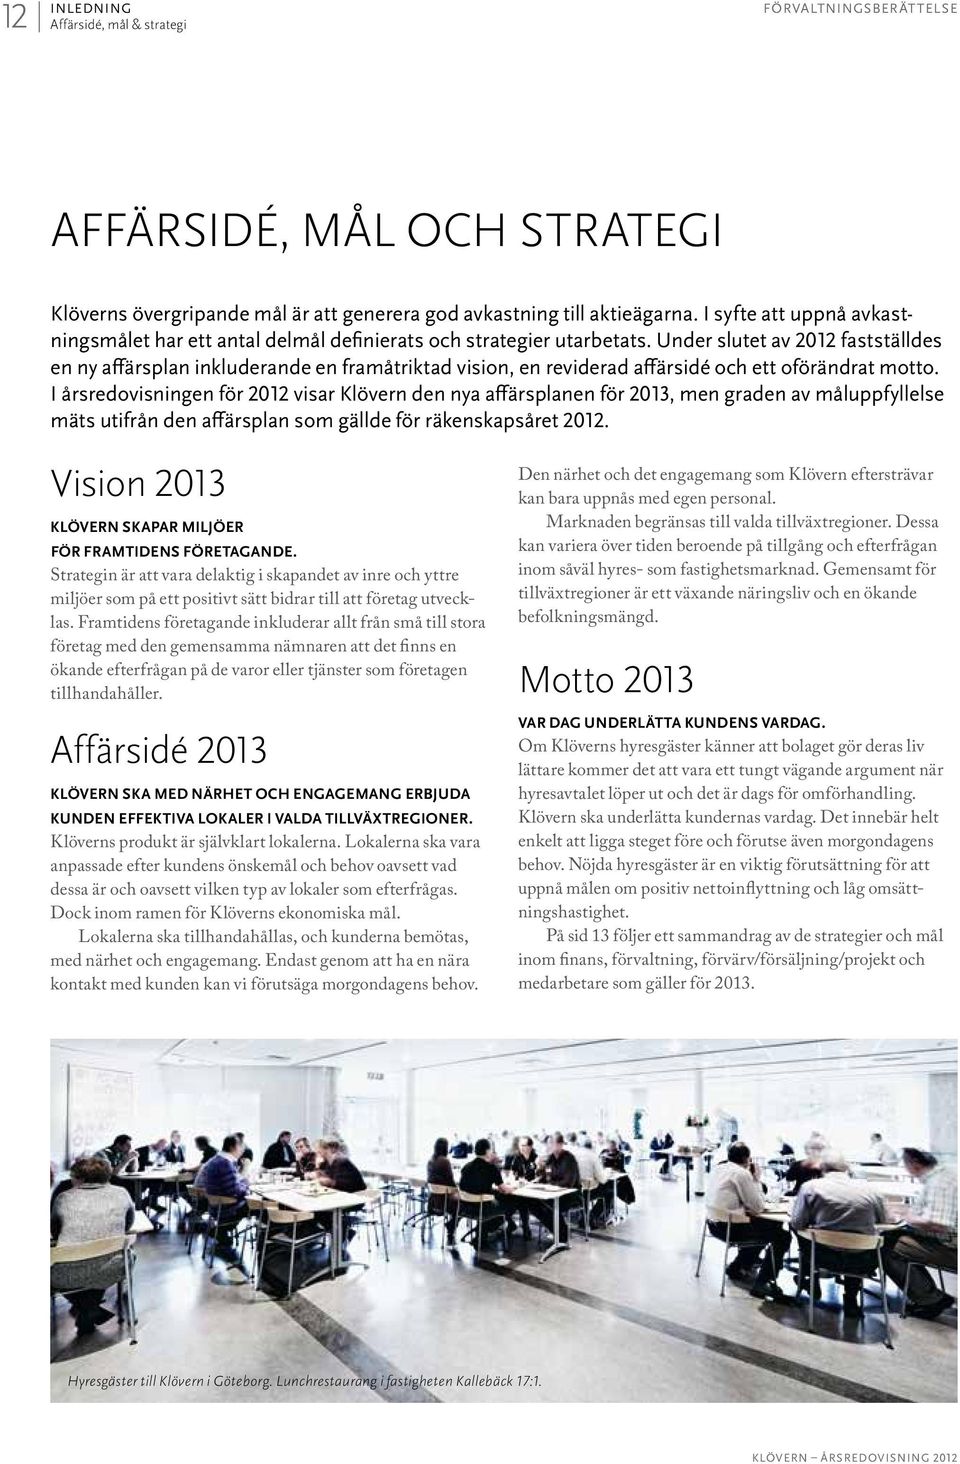 Under slutet av 2012 fastställdes en ny affärsplan inkluderande en framåtriktad vision, en reviderad affärsidé och ett oförändrat motto.